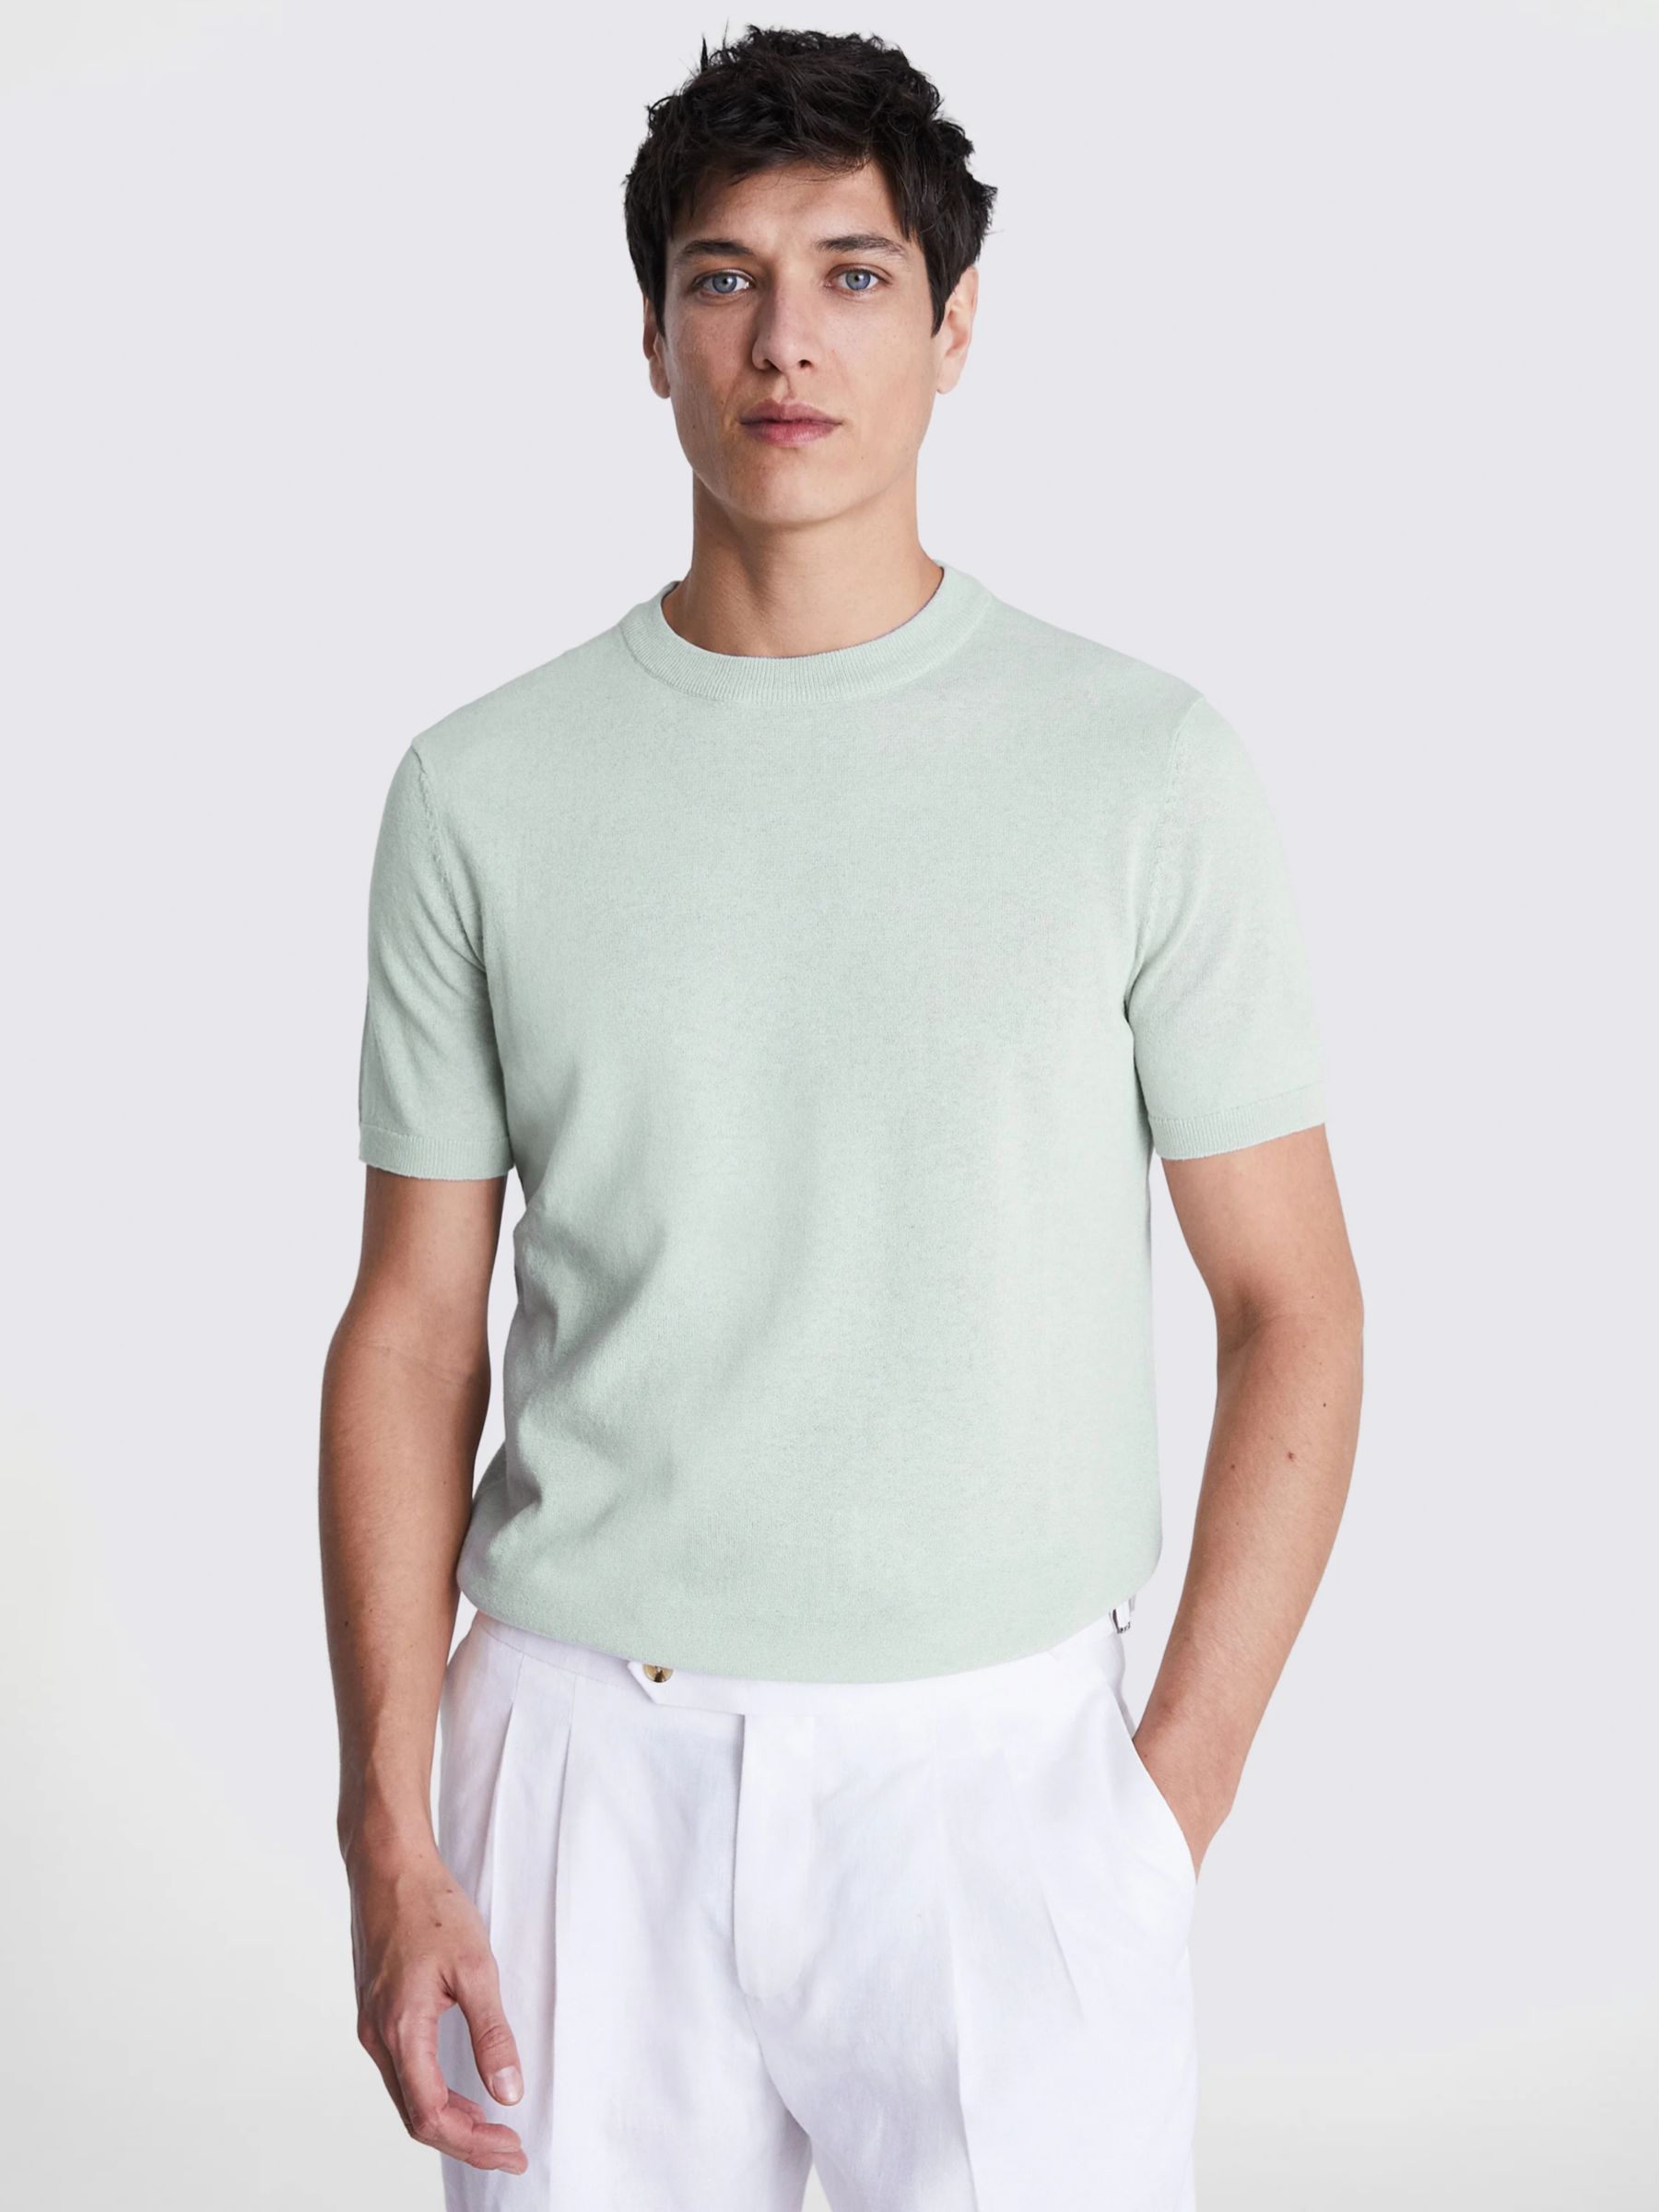 Moss Linen Blend T-Shirt, Green, XXL